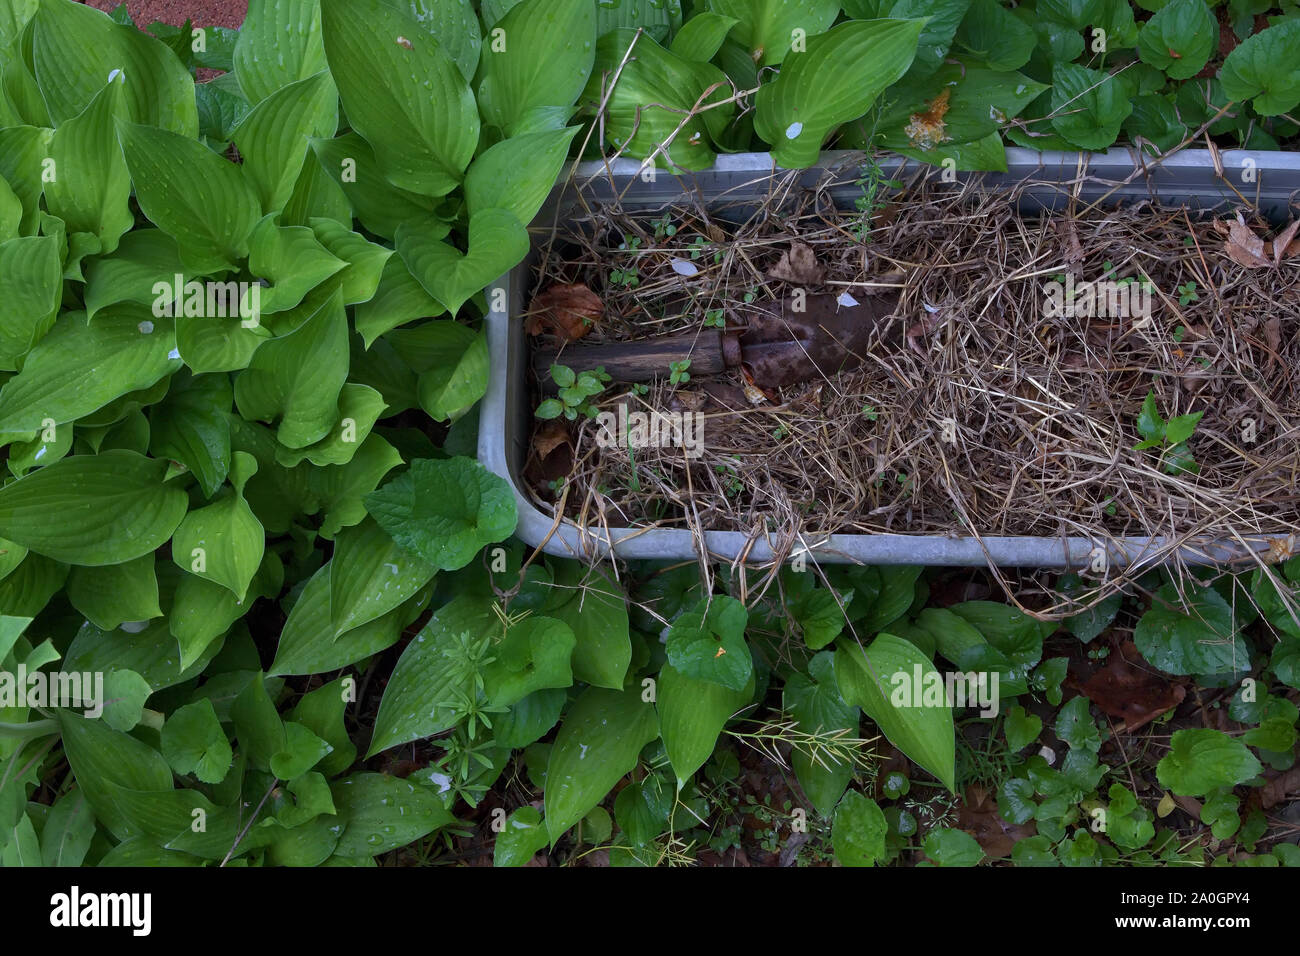 A lungo trascurata la piantatrice e ruggine cazzuola tra erbacce pronto per essere nuovamente utilizzato per la prossima stagione primaverile. Foto Stock